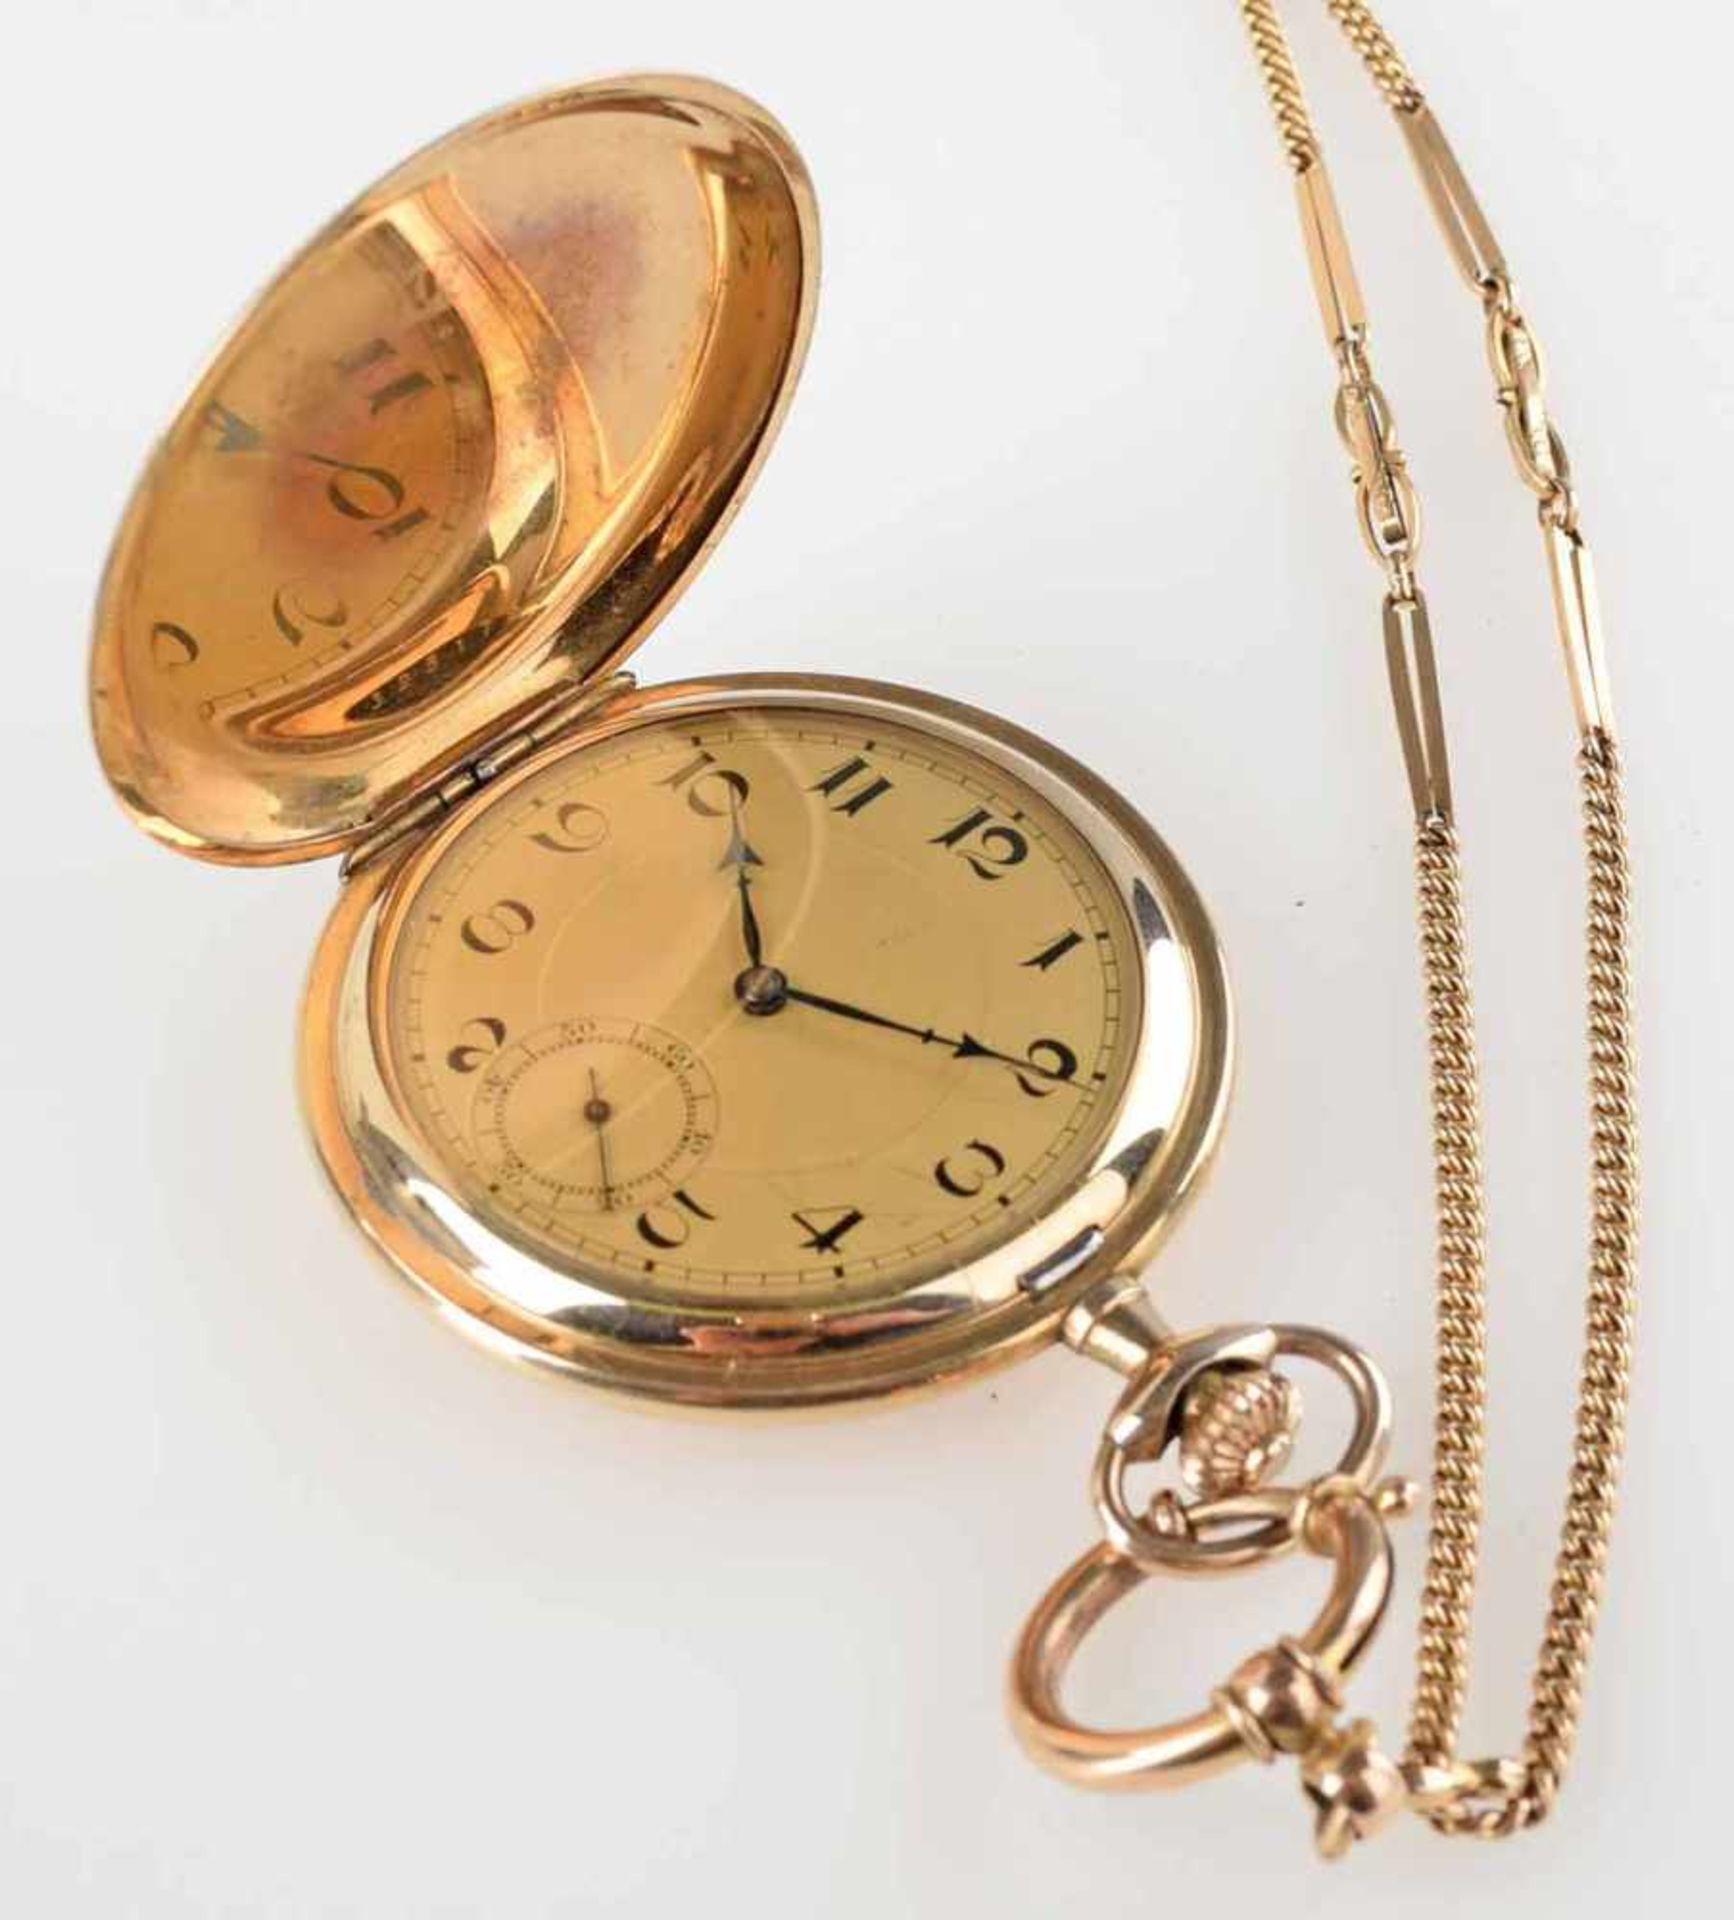 Sprungdeckeltaschenuhr vergoldet, mit goldfarbenem Zifferblatt, gebläute Stahlzeiger, Stunde, Minute - Bild 2 aus 3